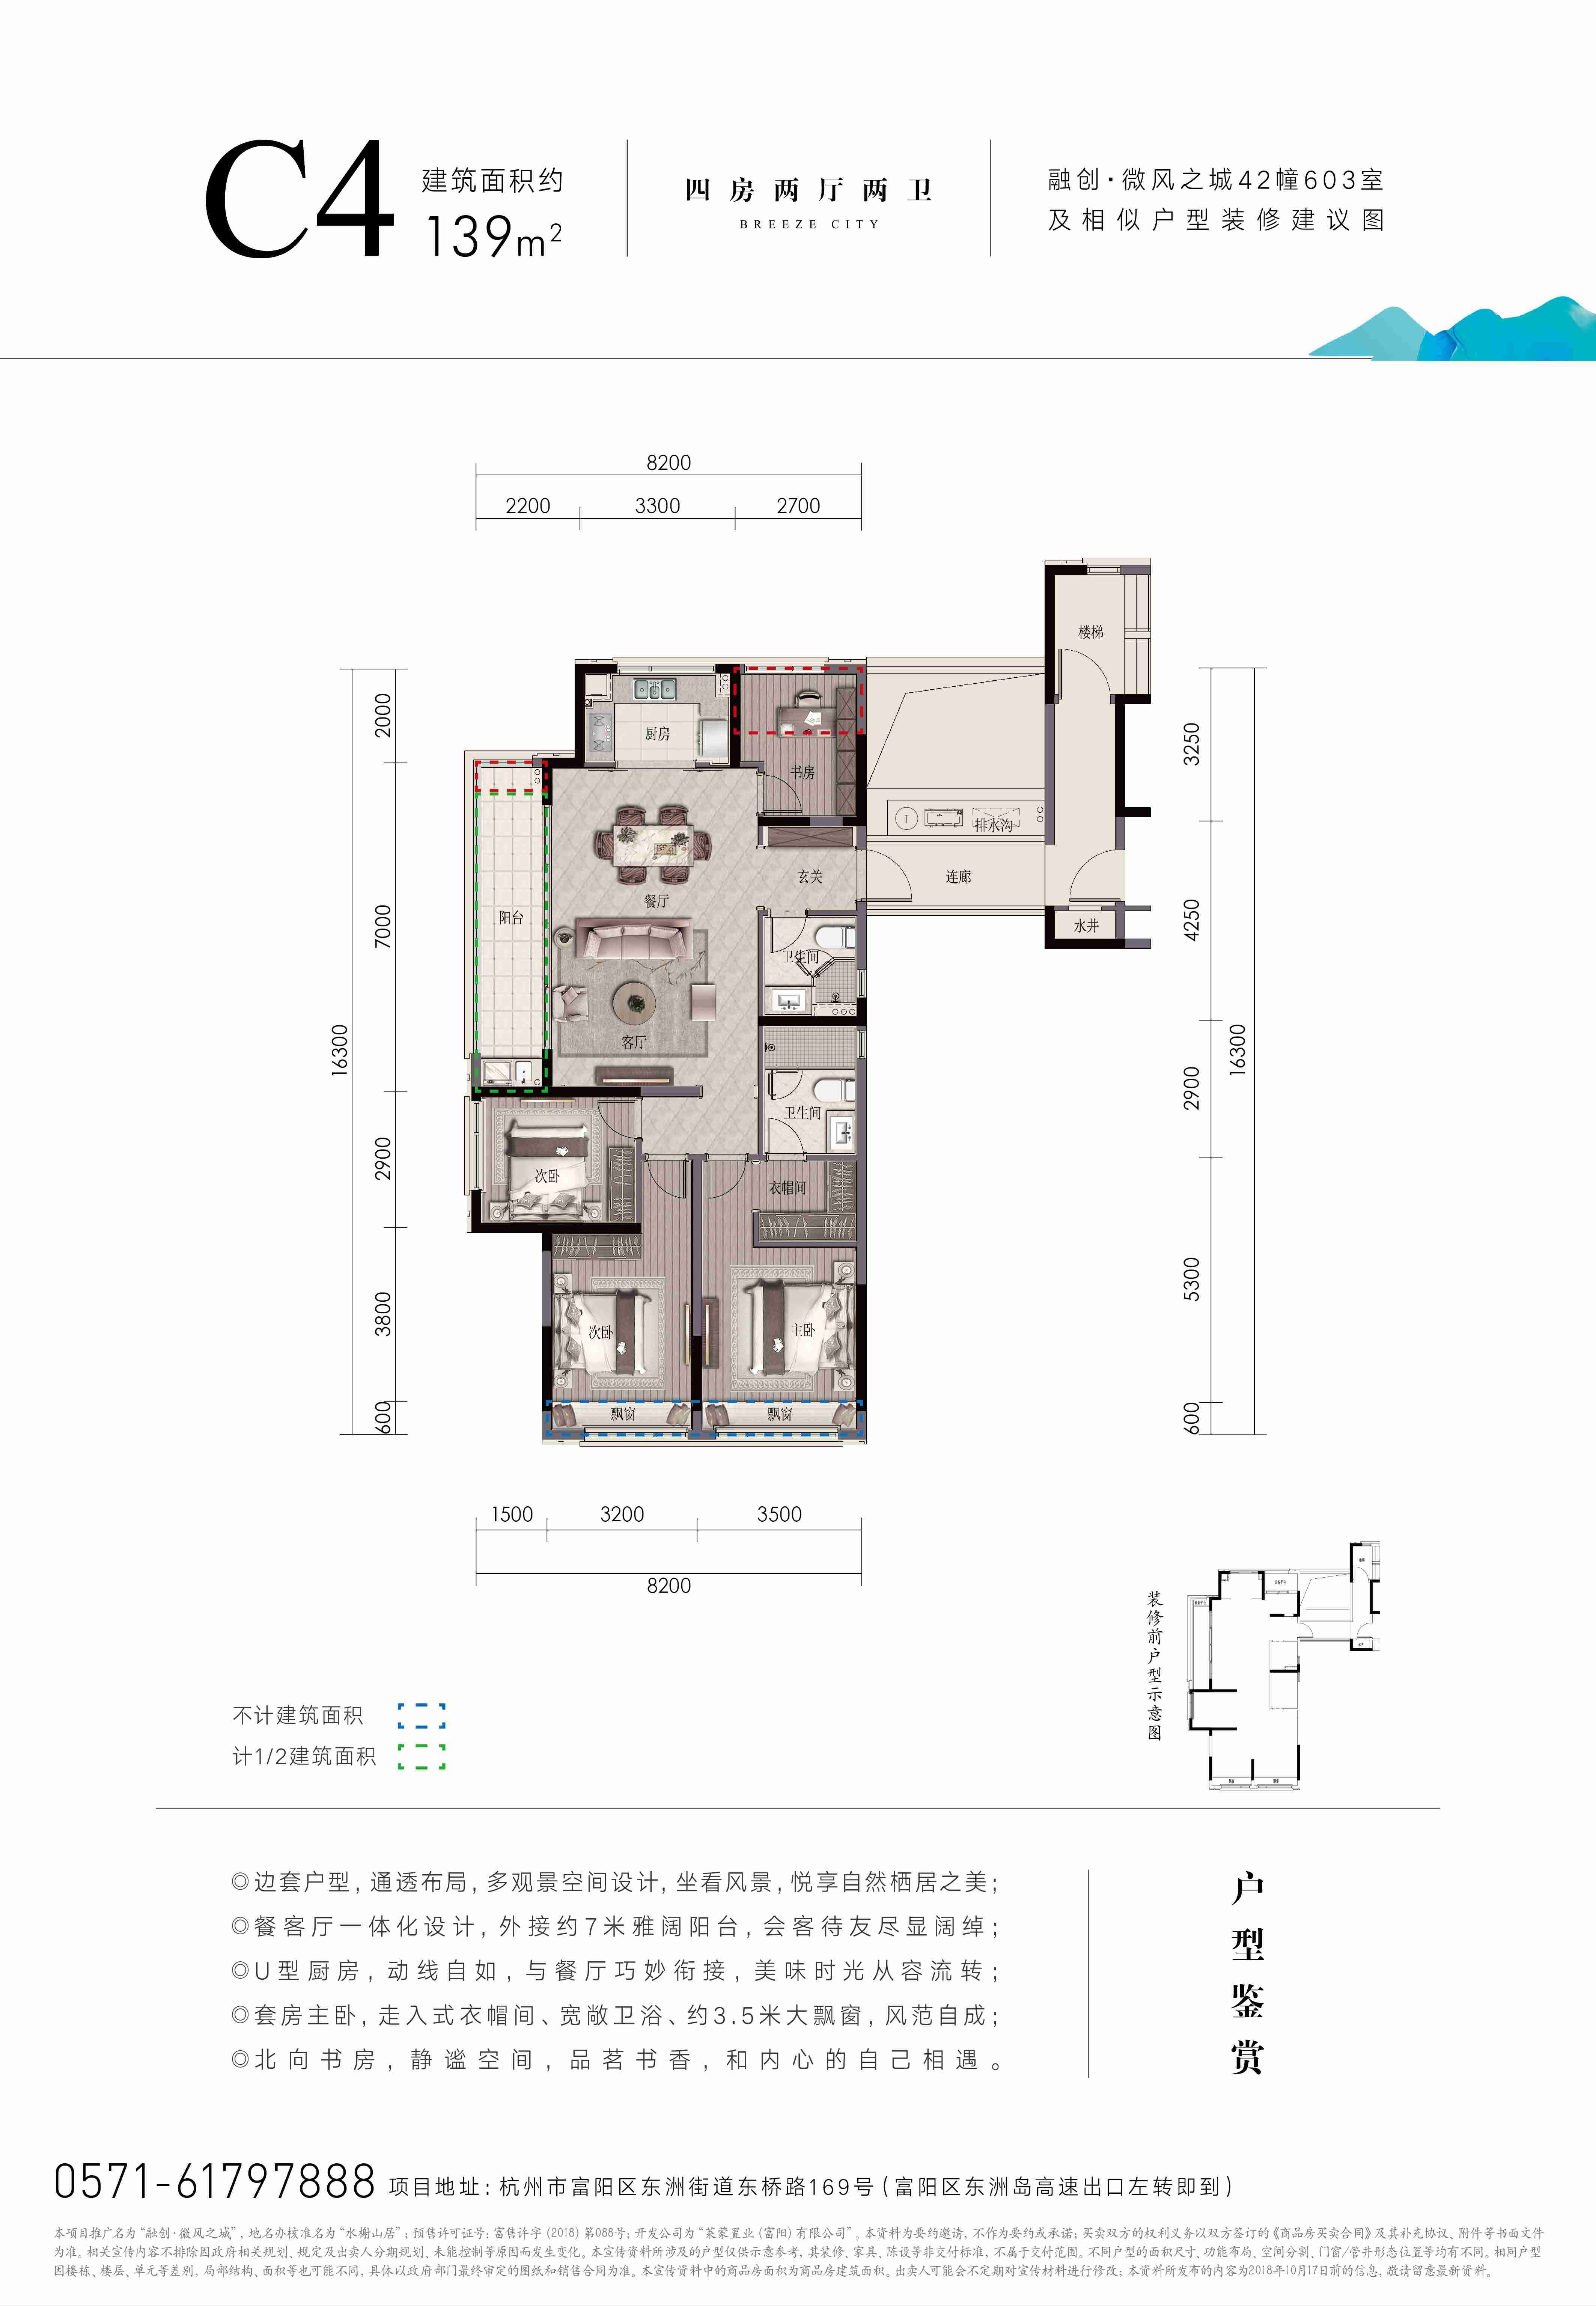 杭州融创微风之城高层139方C4-4室2厅2卫